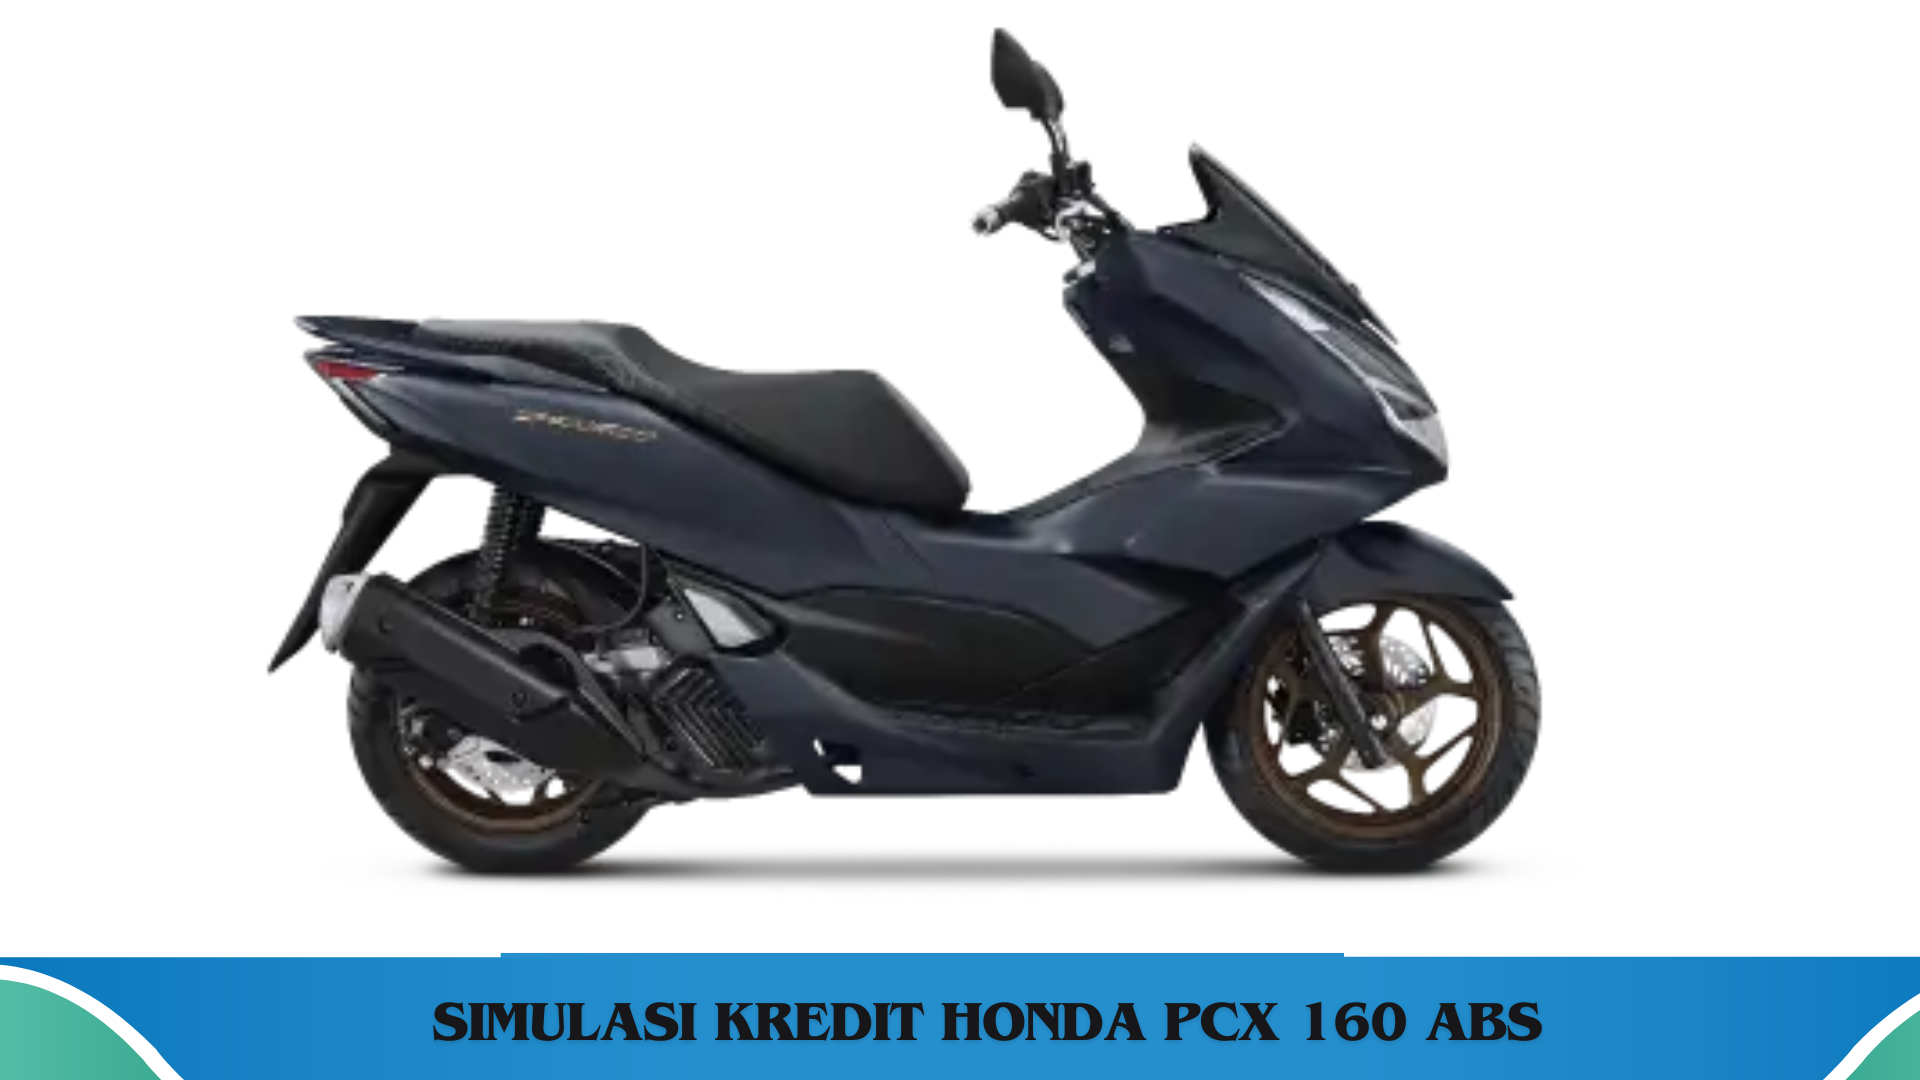 Sambut Lebaran dengan Skutik Impian Honda PCX 160 ABS, Cek Simulasi Kredit Kepemilikannya